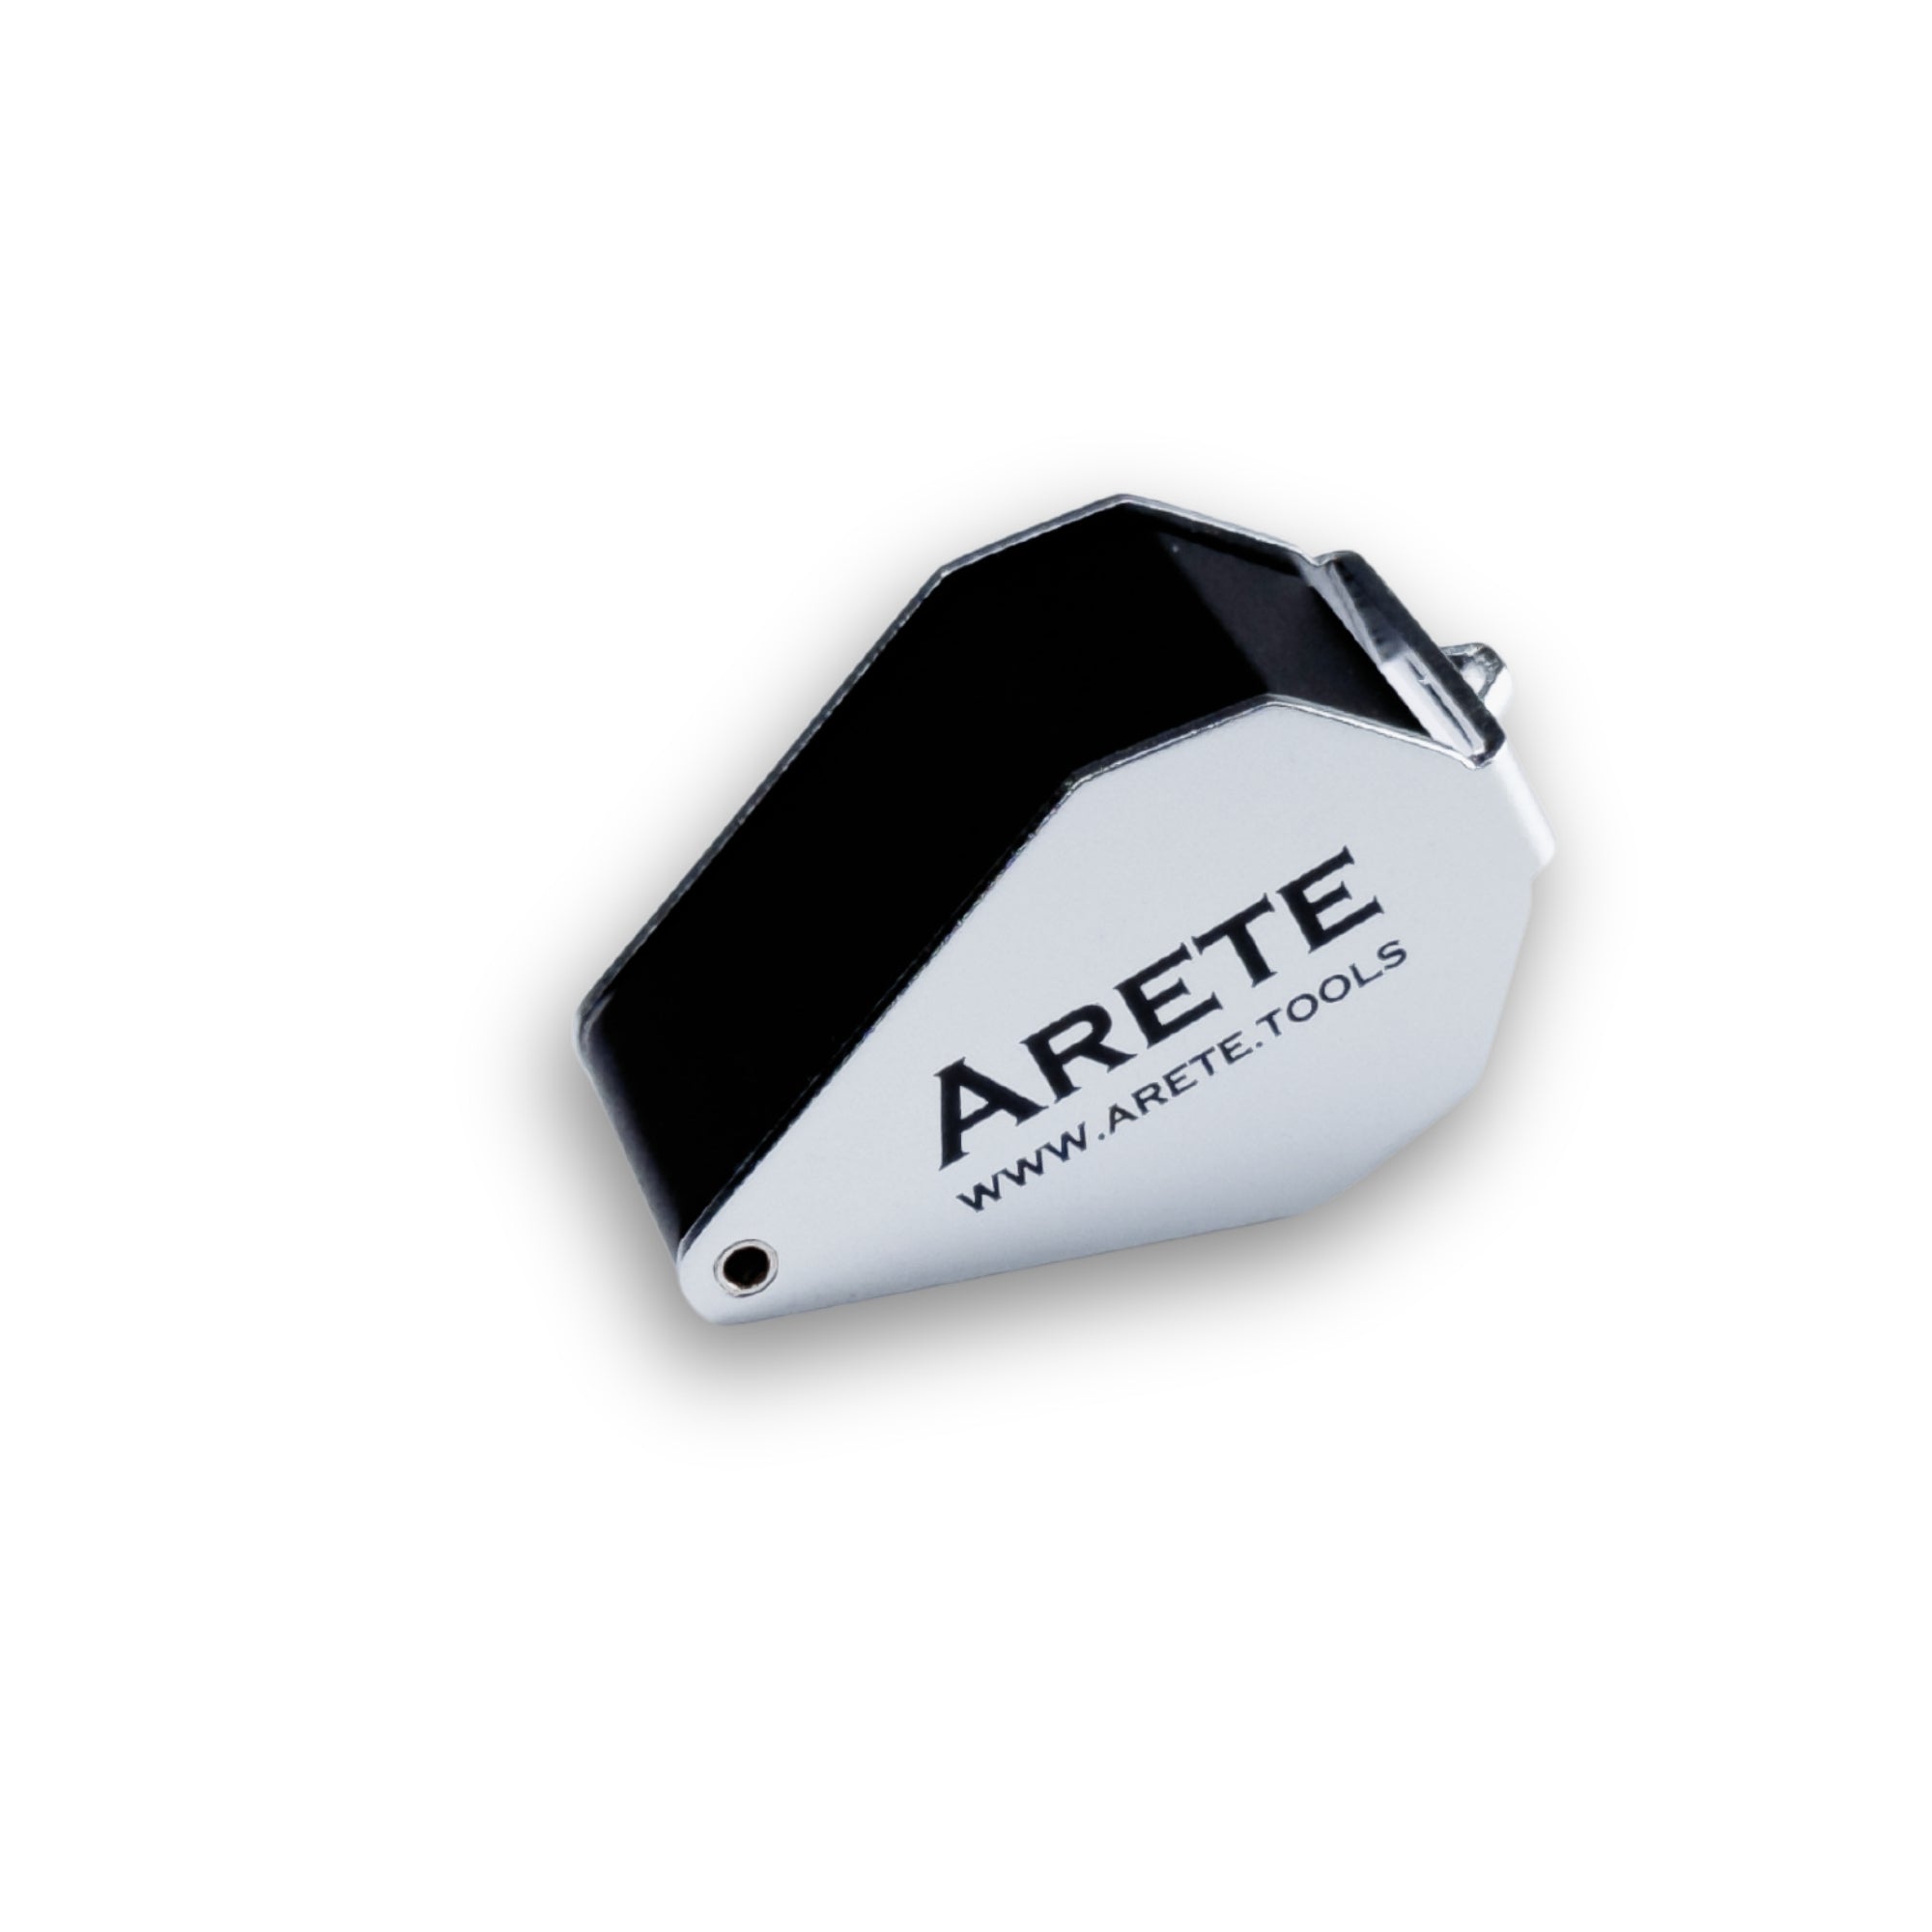 Кишенькова лупа Arete 10x - 21 мм зі світлодіодним підсвічуванням на батарейках